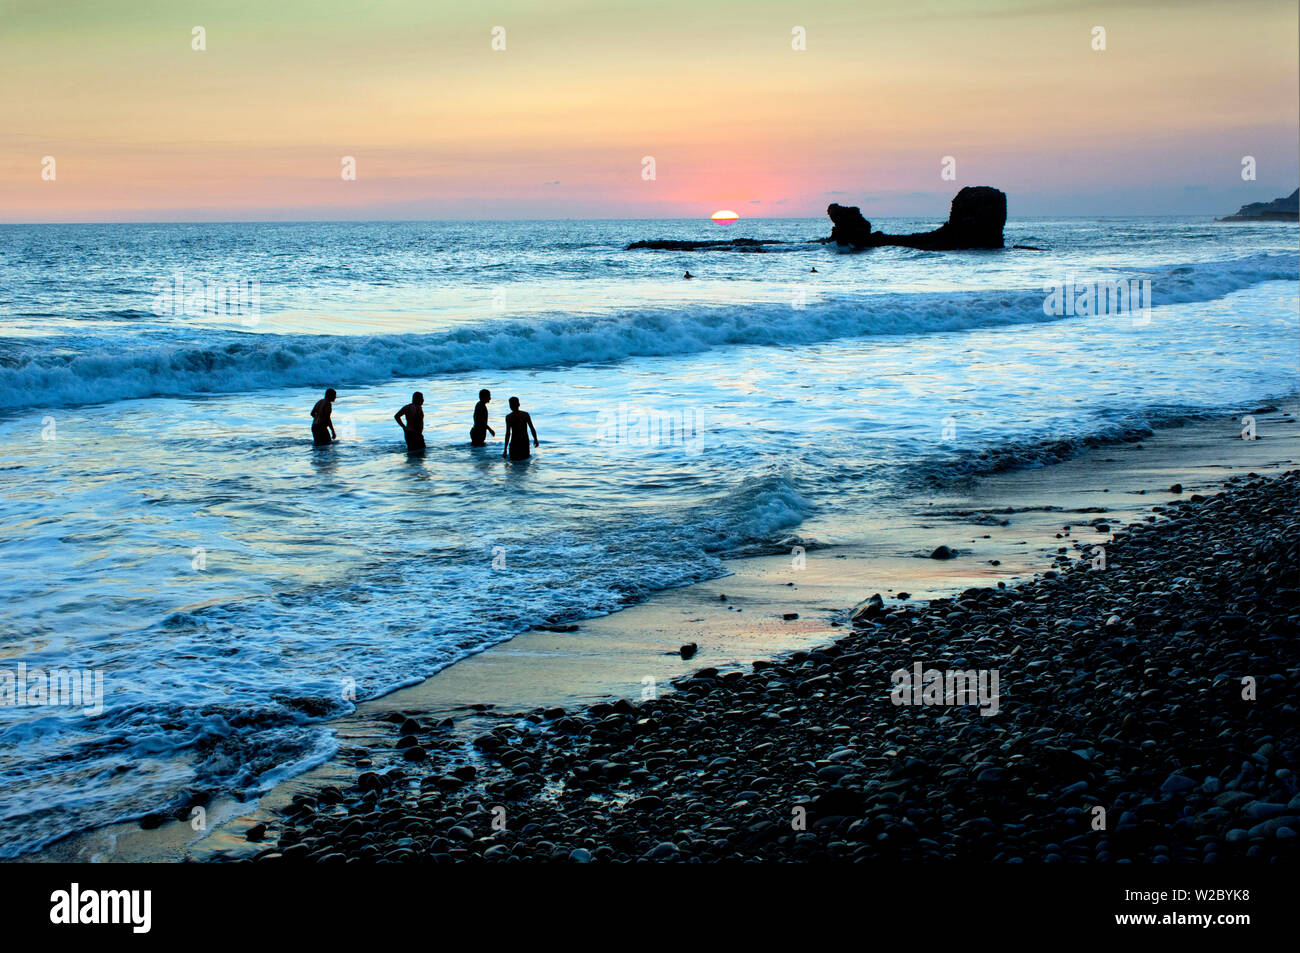 Playa El Tunco, El Salvador, Pacific Ocean Beach, popolare tra i surfisti, grandi onde, chiamato dopo la formazione di roccia, Tunco si traduce per il maiale o suina, la roccia assomiglia a quella di un maiale galleggiante sul suo retro, Tramonto Foto Stock